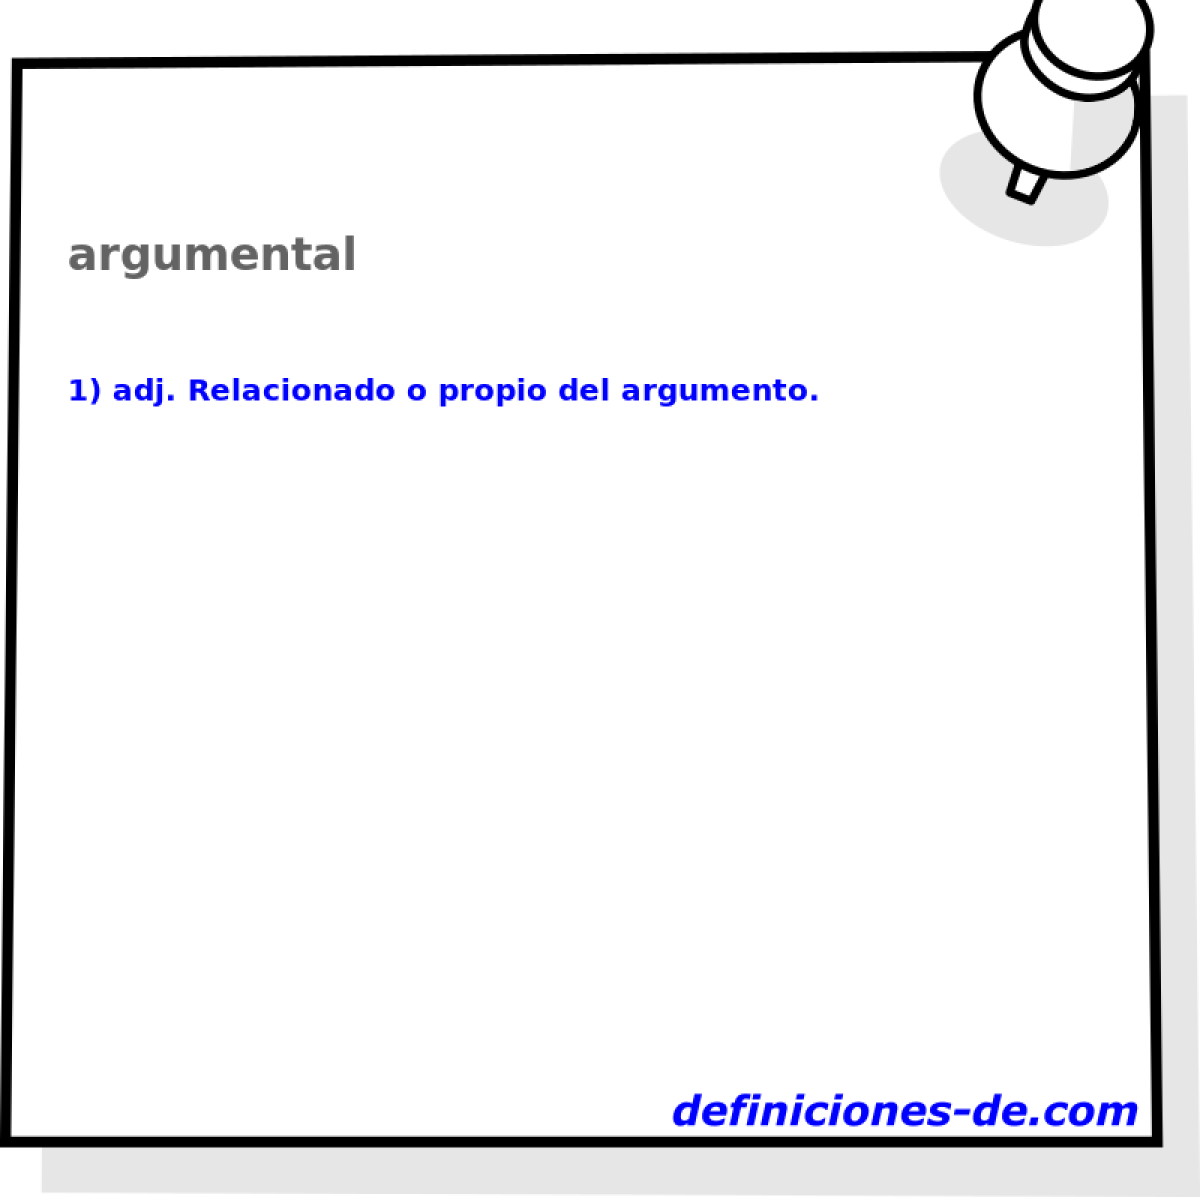 argumental 